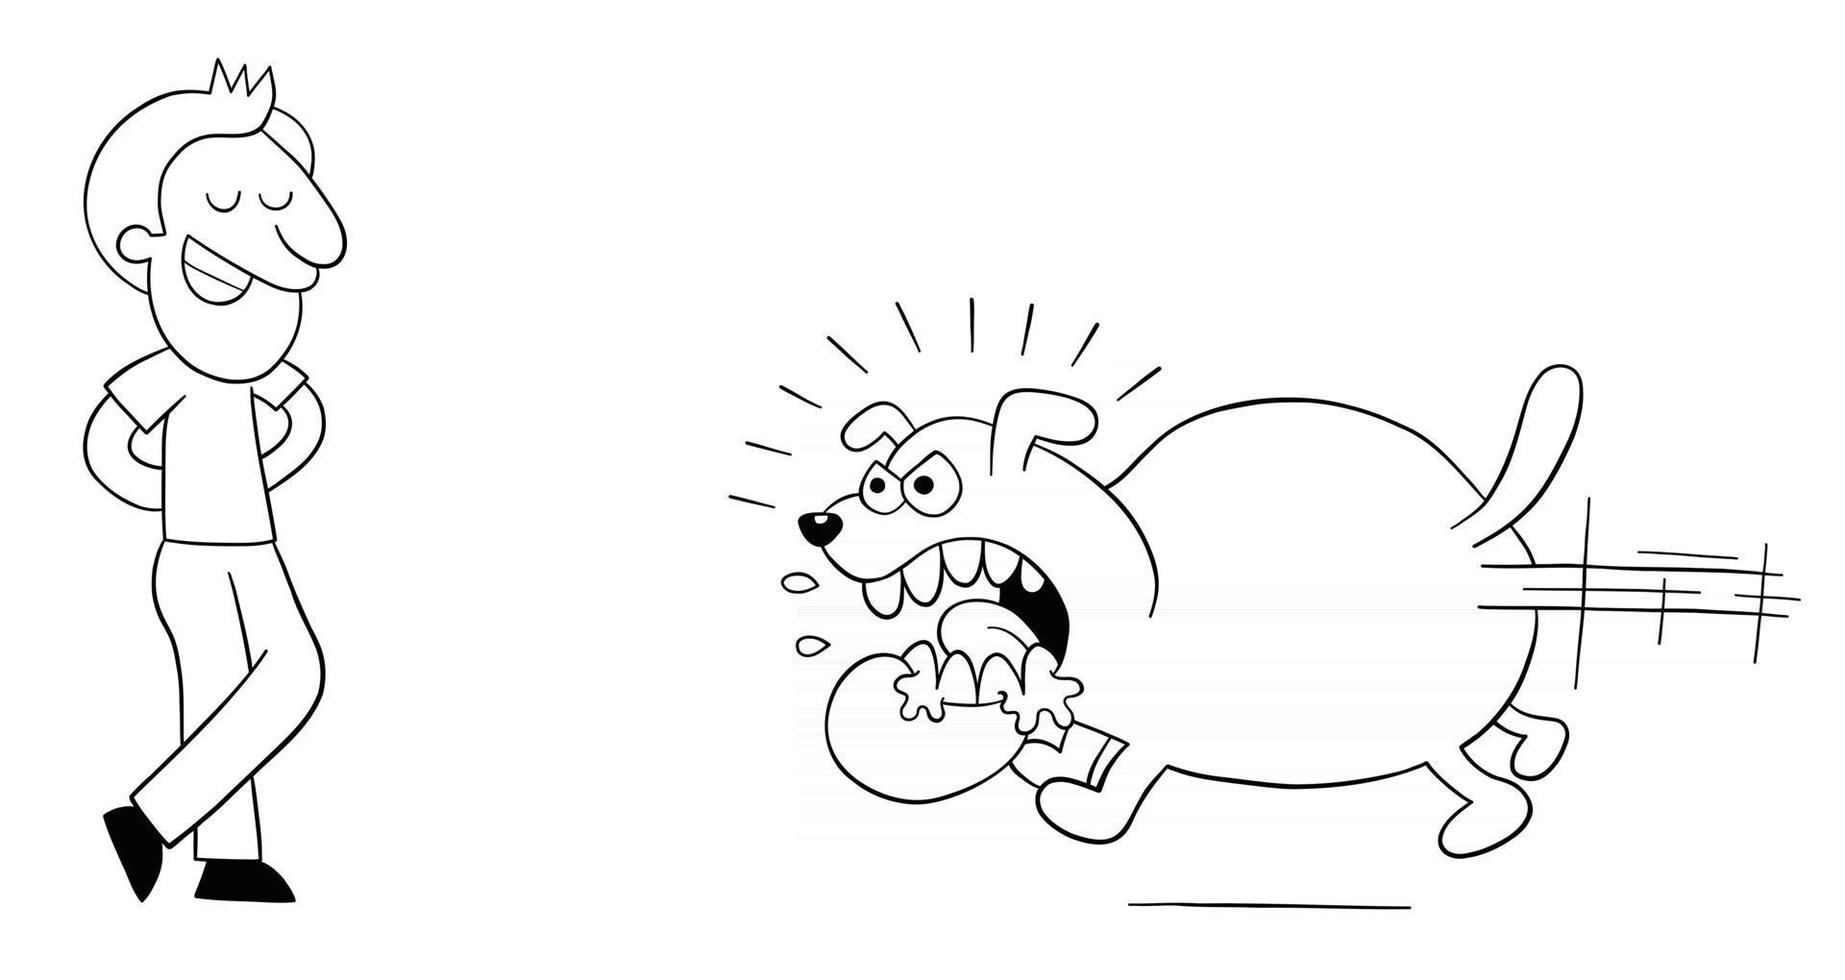 dibujos animados perro enojado y enorme corre para morder al hombre, pero el hombre no tiene miedo ilustración vectorial vector